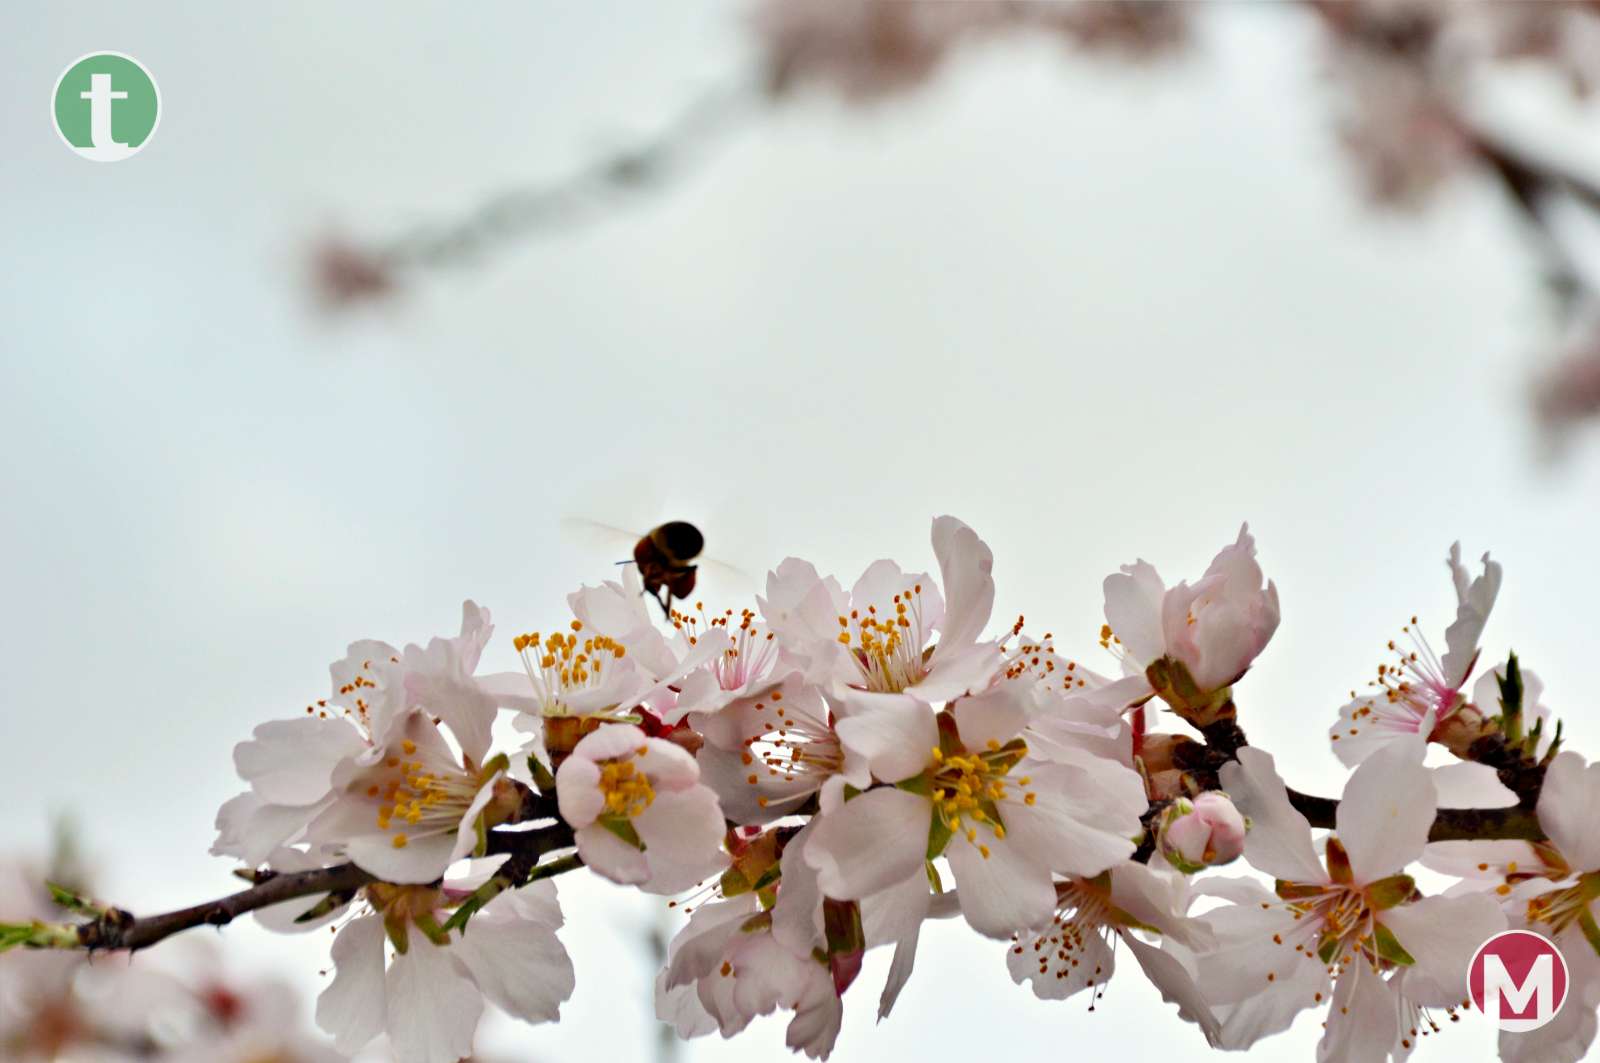 El espectáculo de la floración de los almendros anticipa la alegría del paisaje primaveral en La Mancha